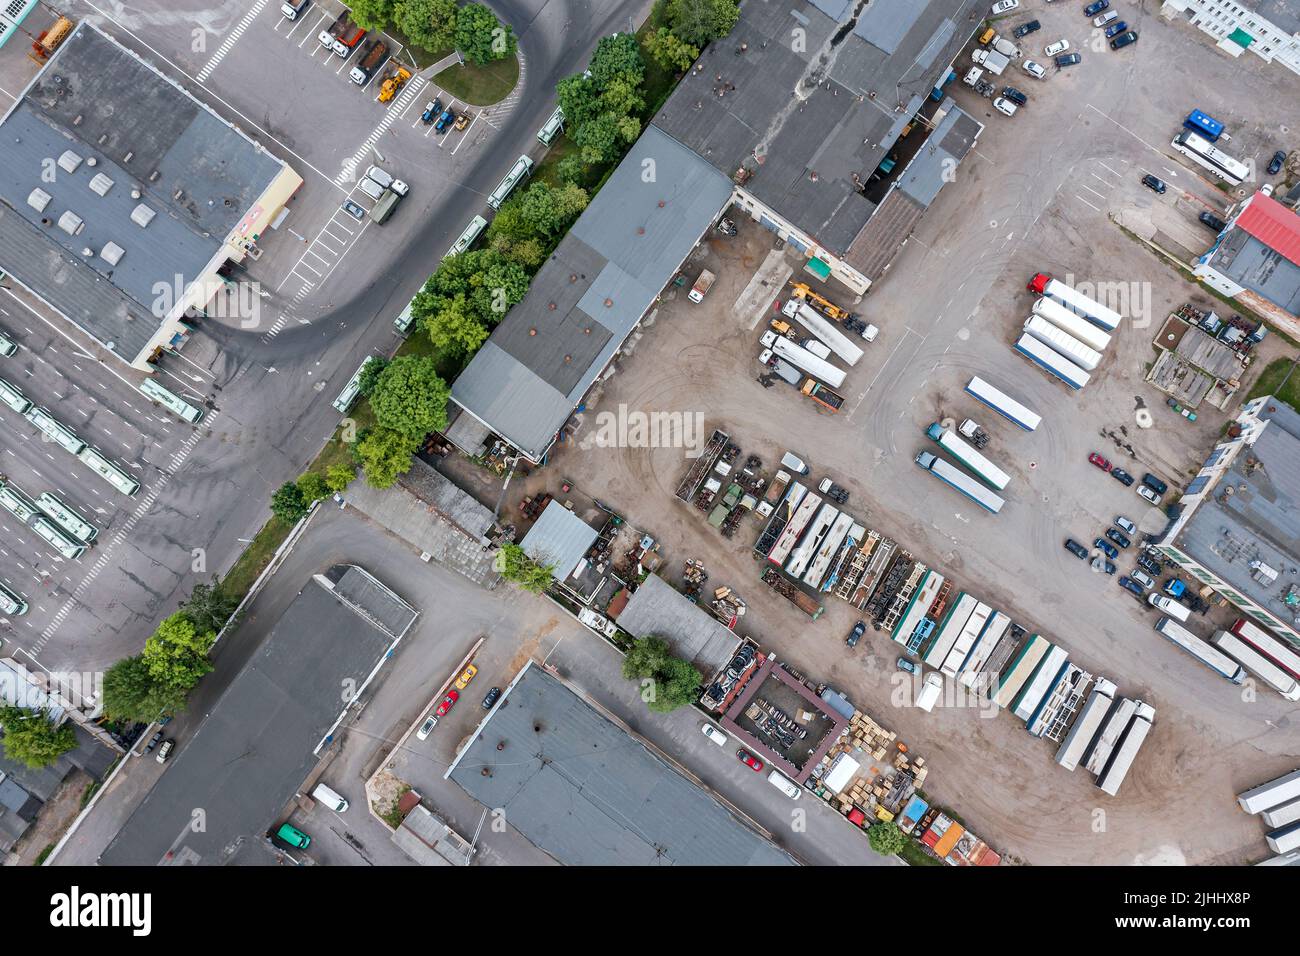 zona industrial urbana. vista superior aérea desde arriba. fondo industrial. Foto de stock